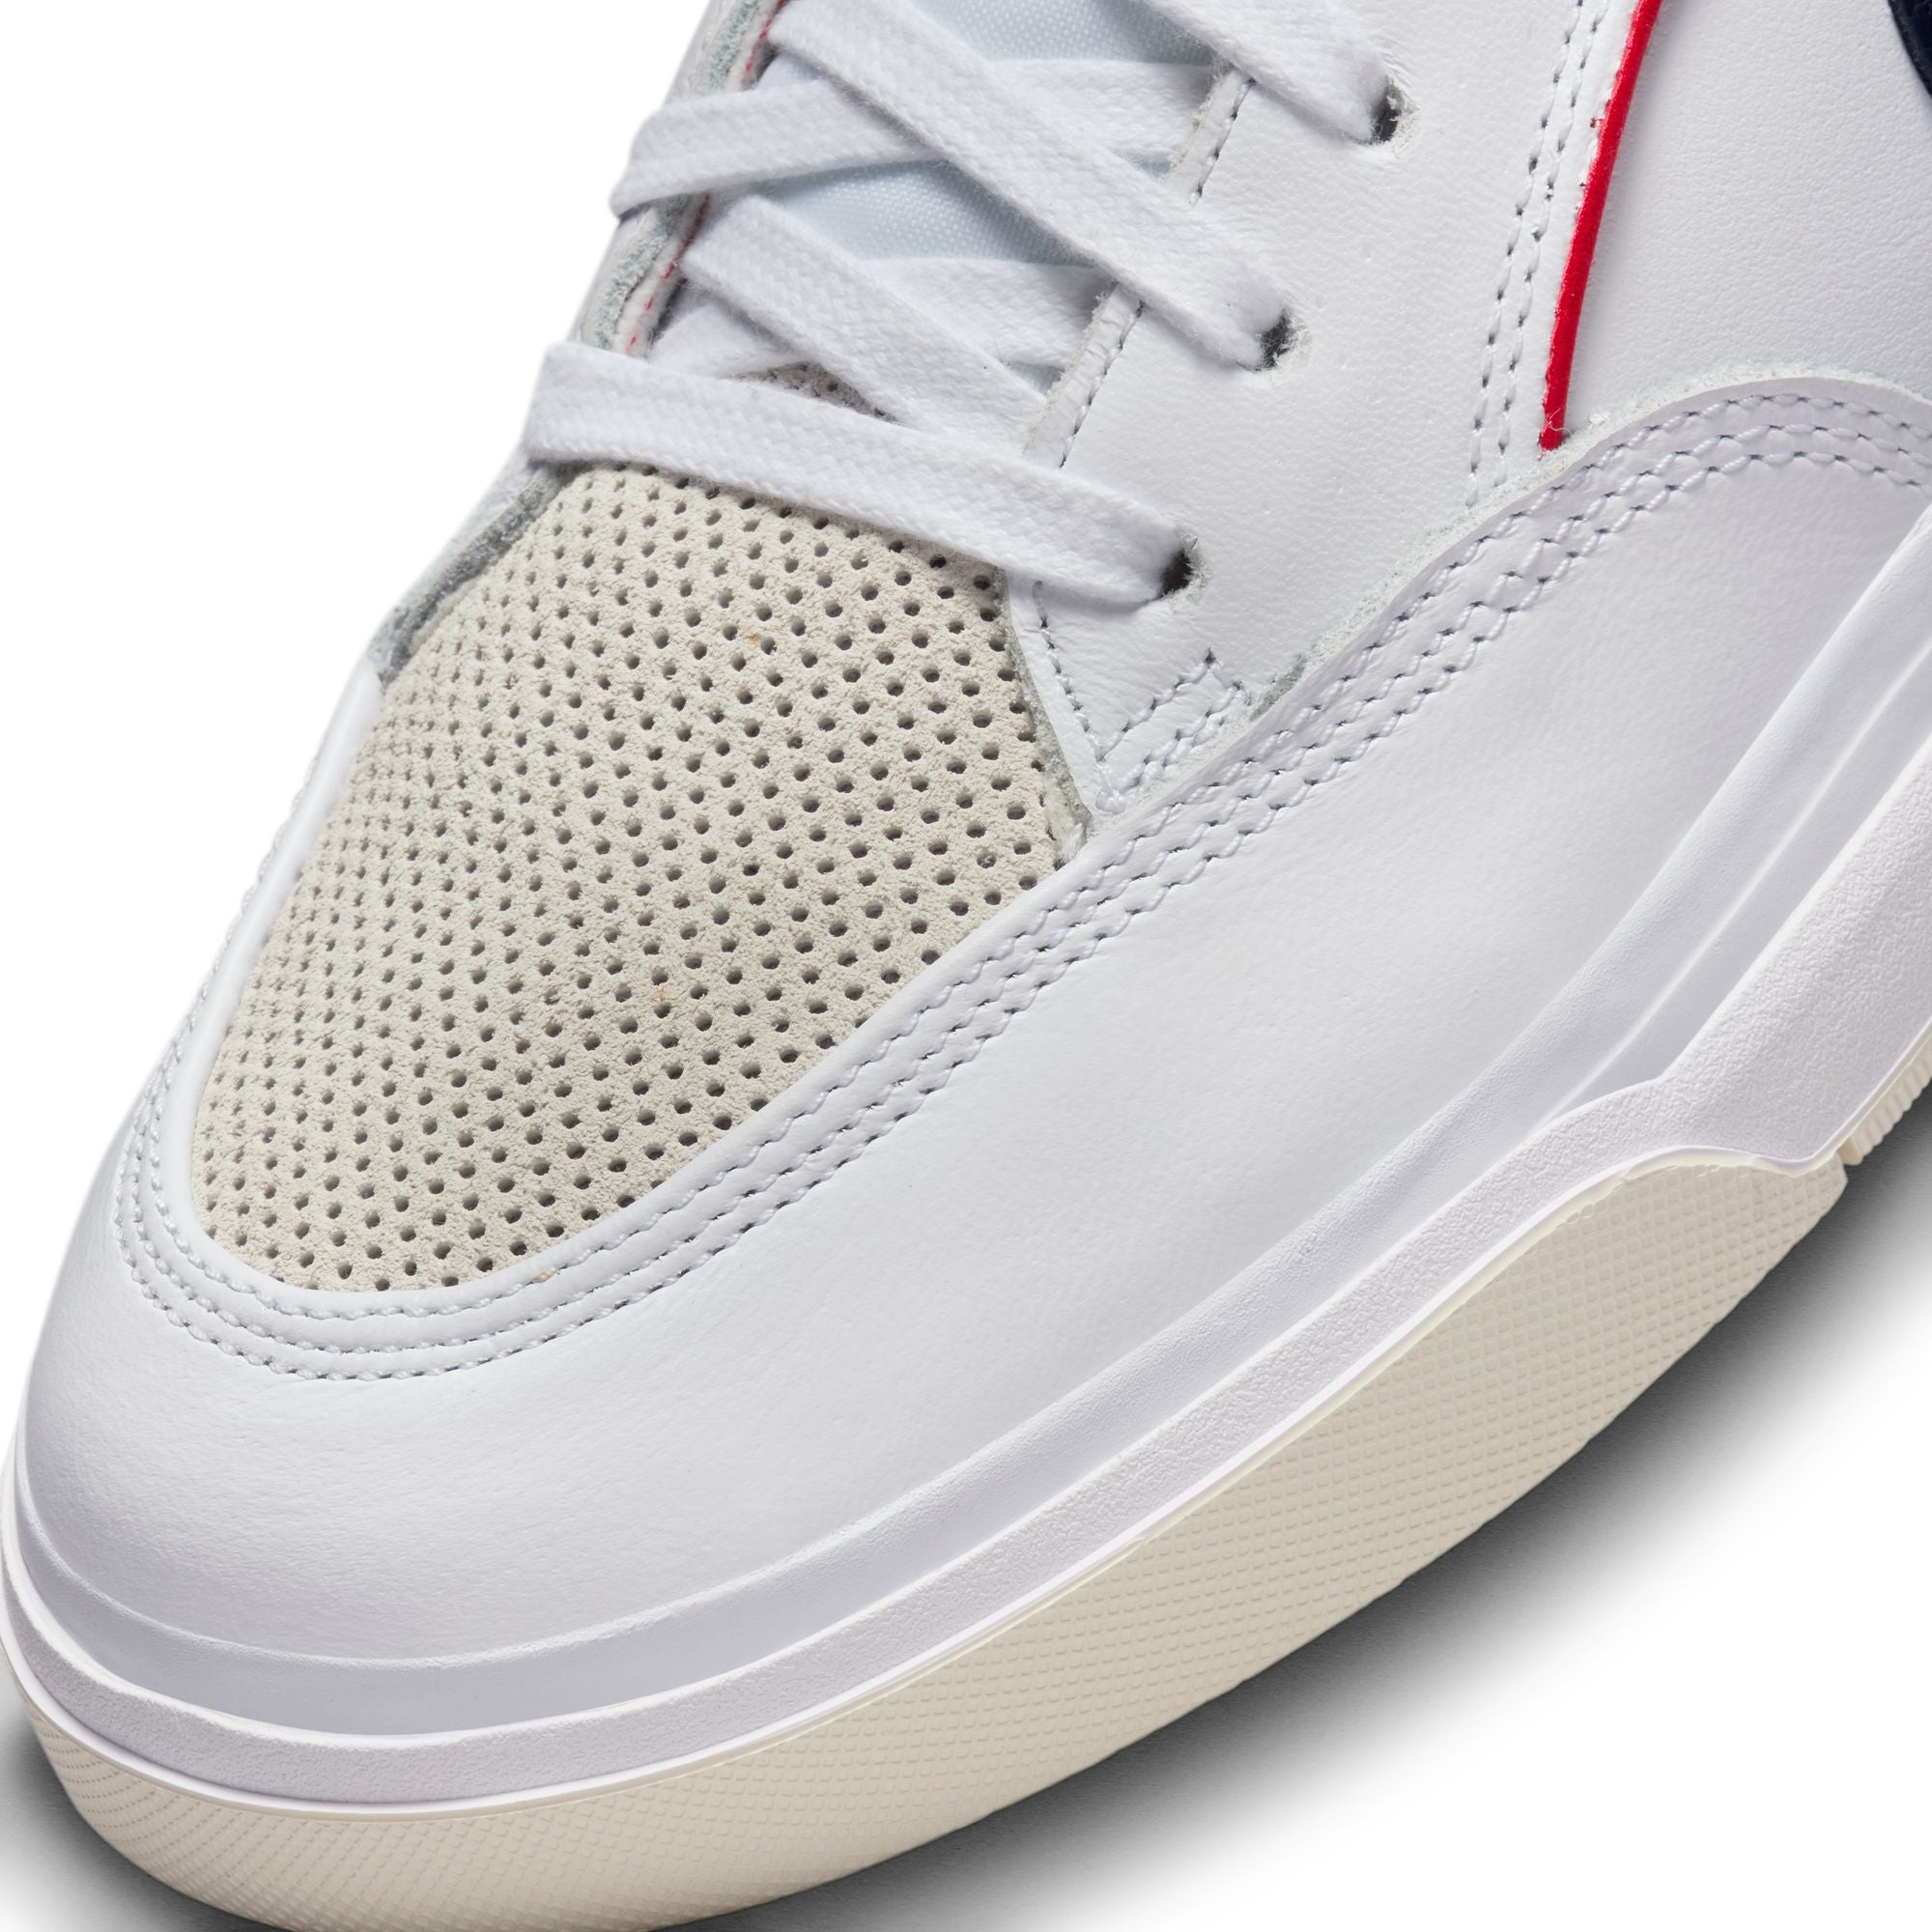 White/Navy Leo Baker Premium React Nike SB Skate Shoe Detail